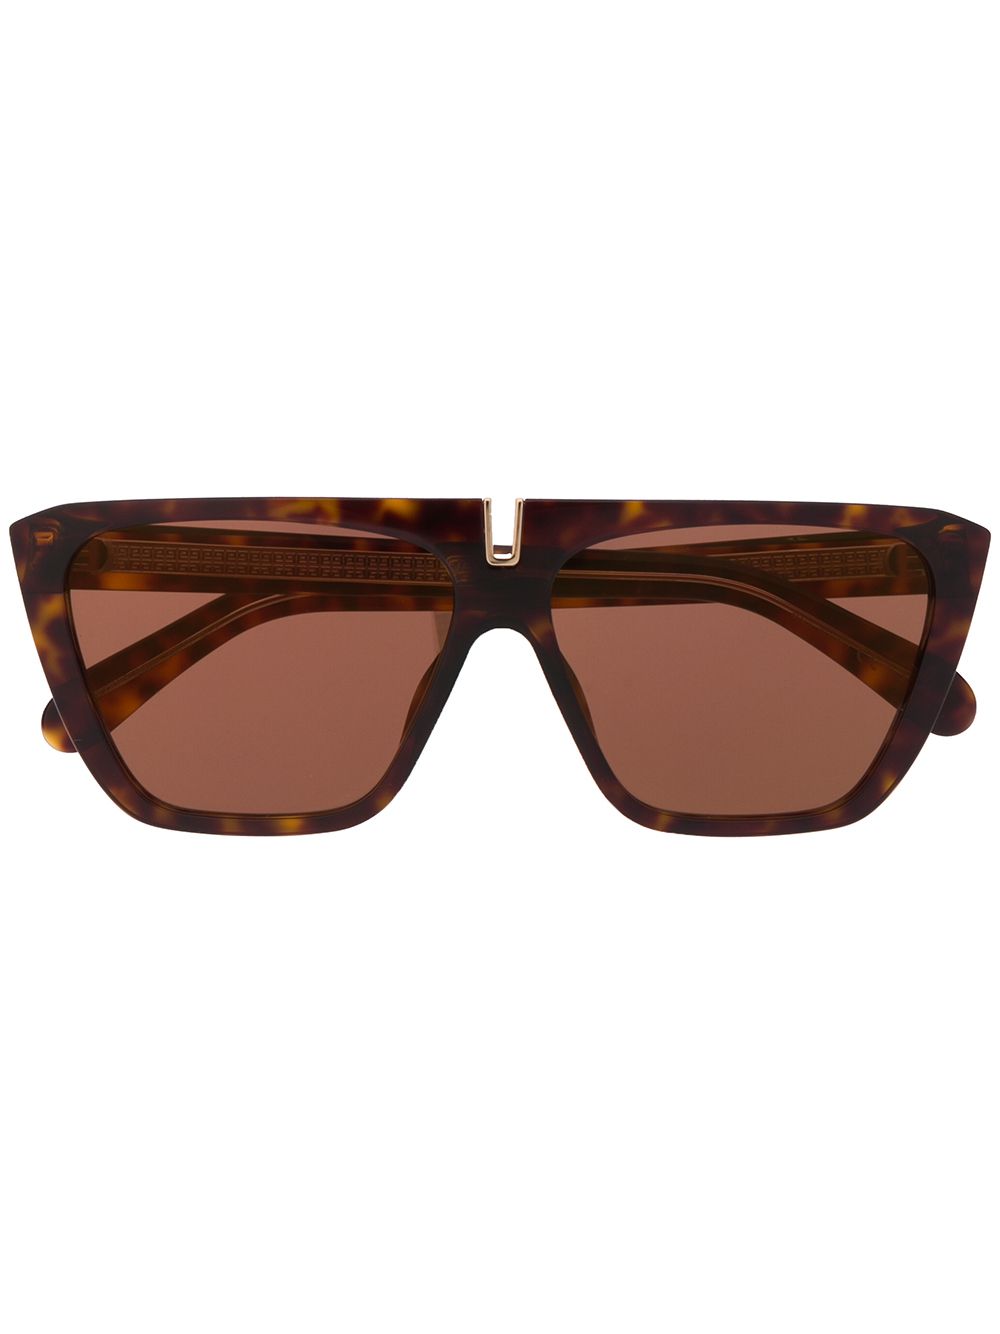 фото Givenchy eyewear солнцезащитные очки в массивной оправе черепаховой расцветки